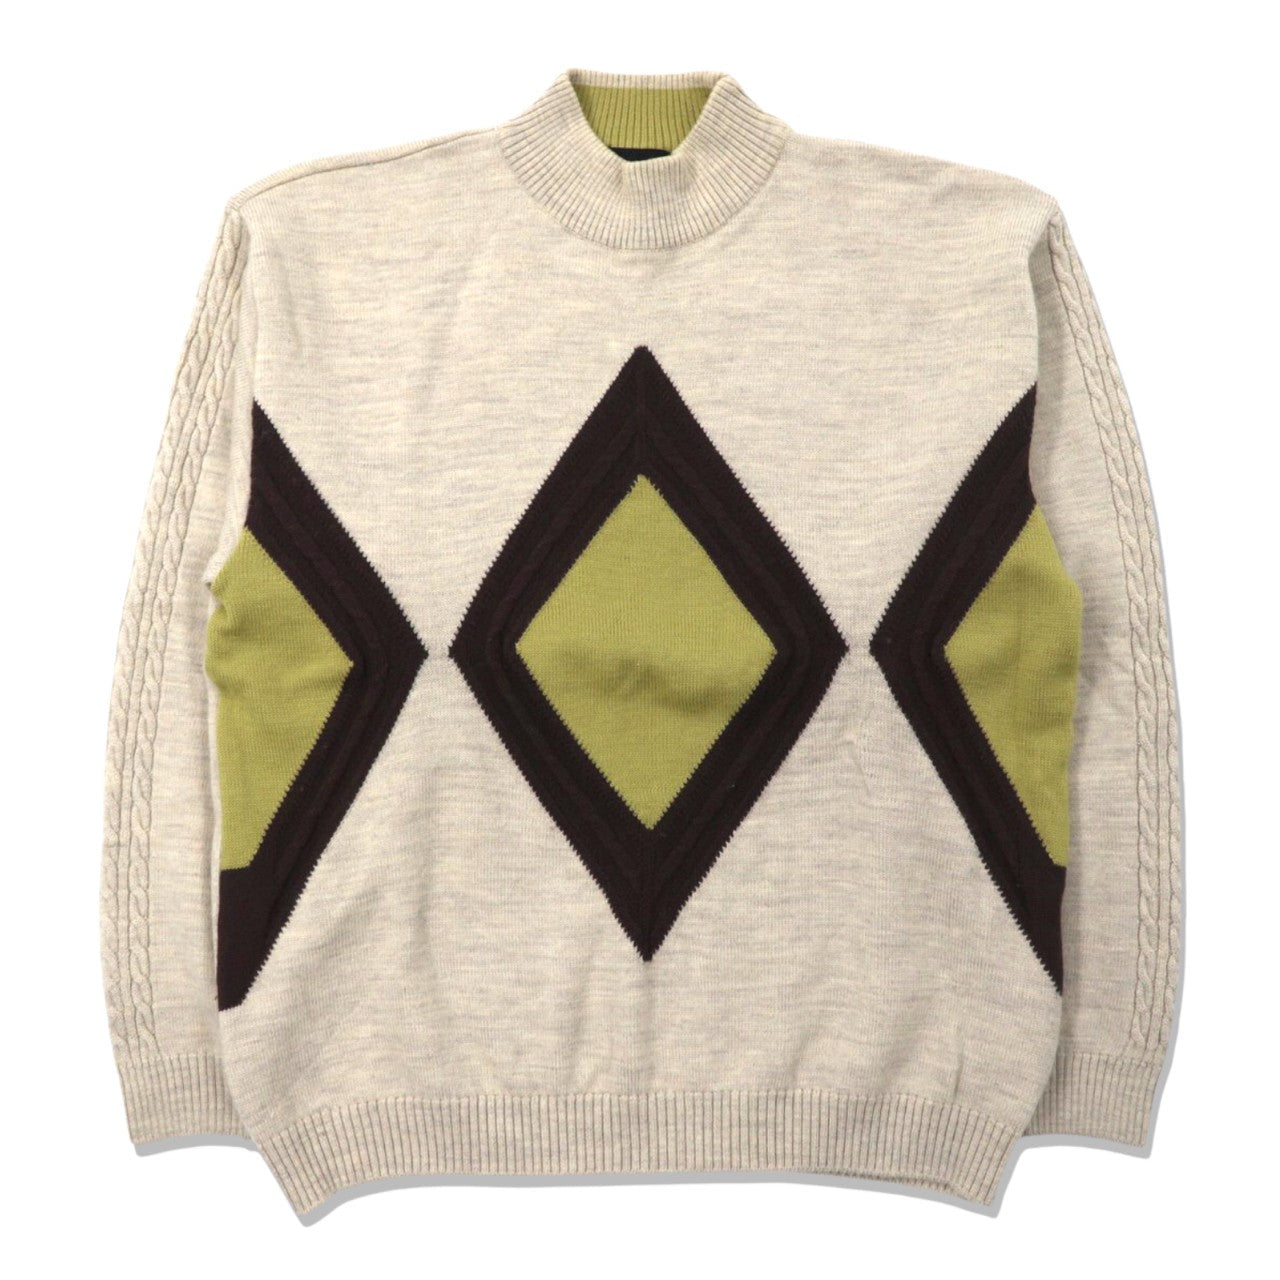 Mr.junko SQUARE High neck knit sweater L beige wool geometric 